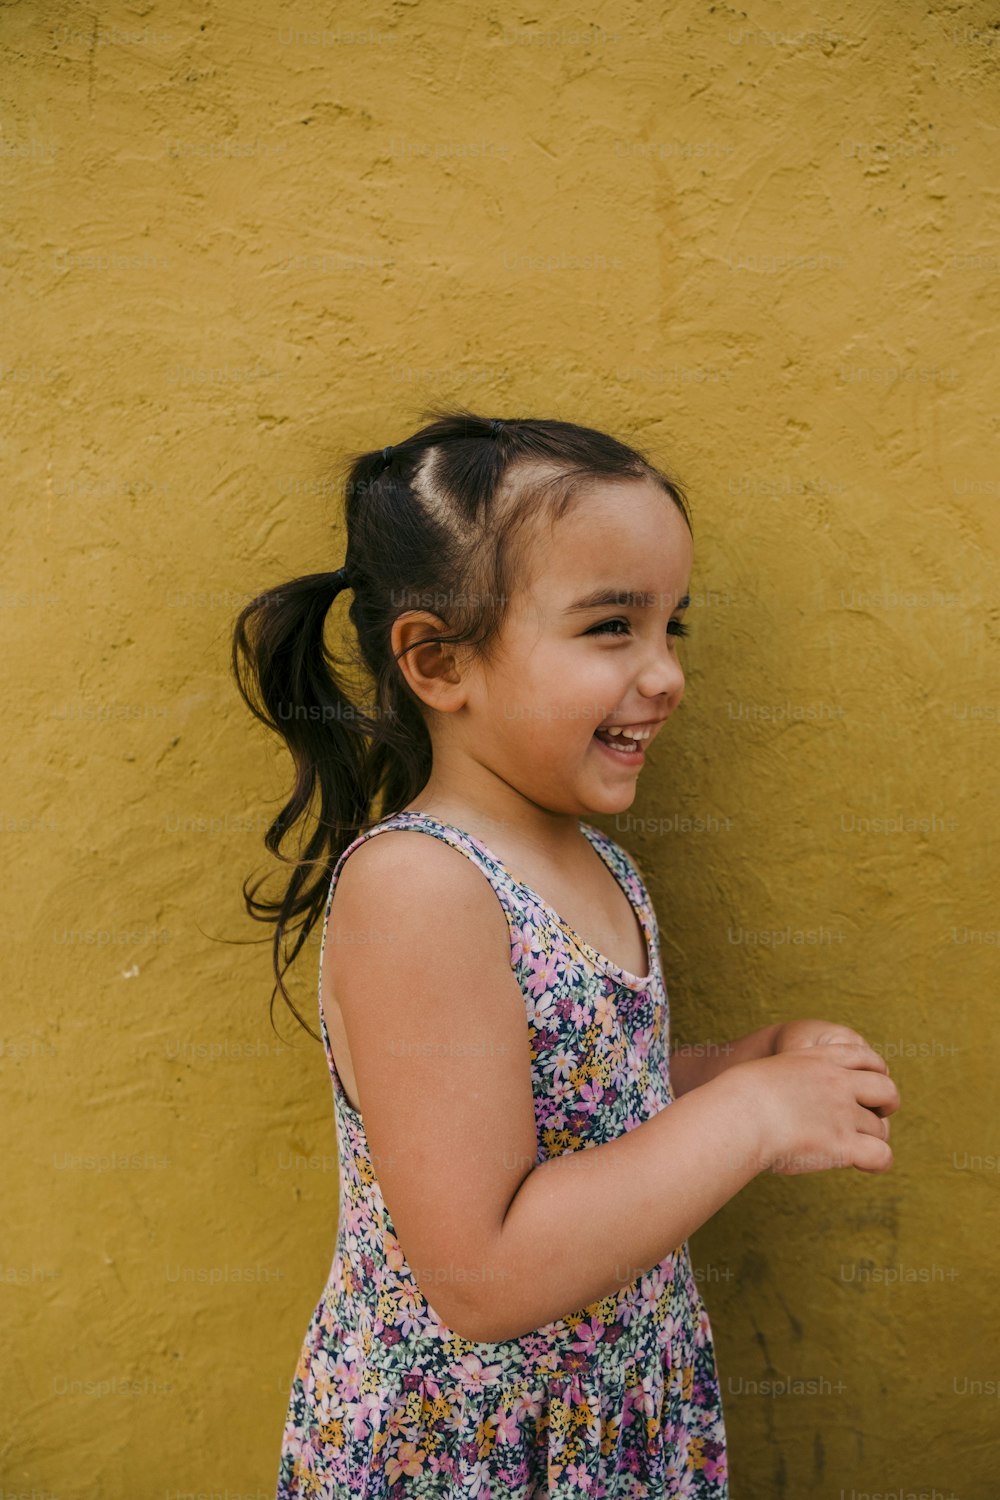 Una niña parada frente a una pared amarilla